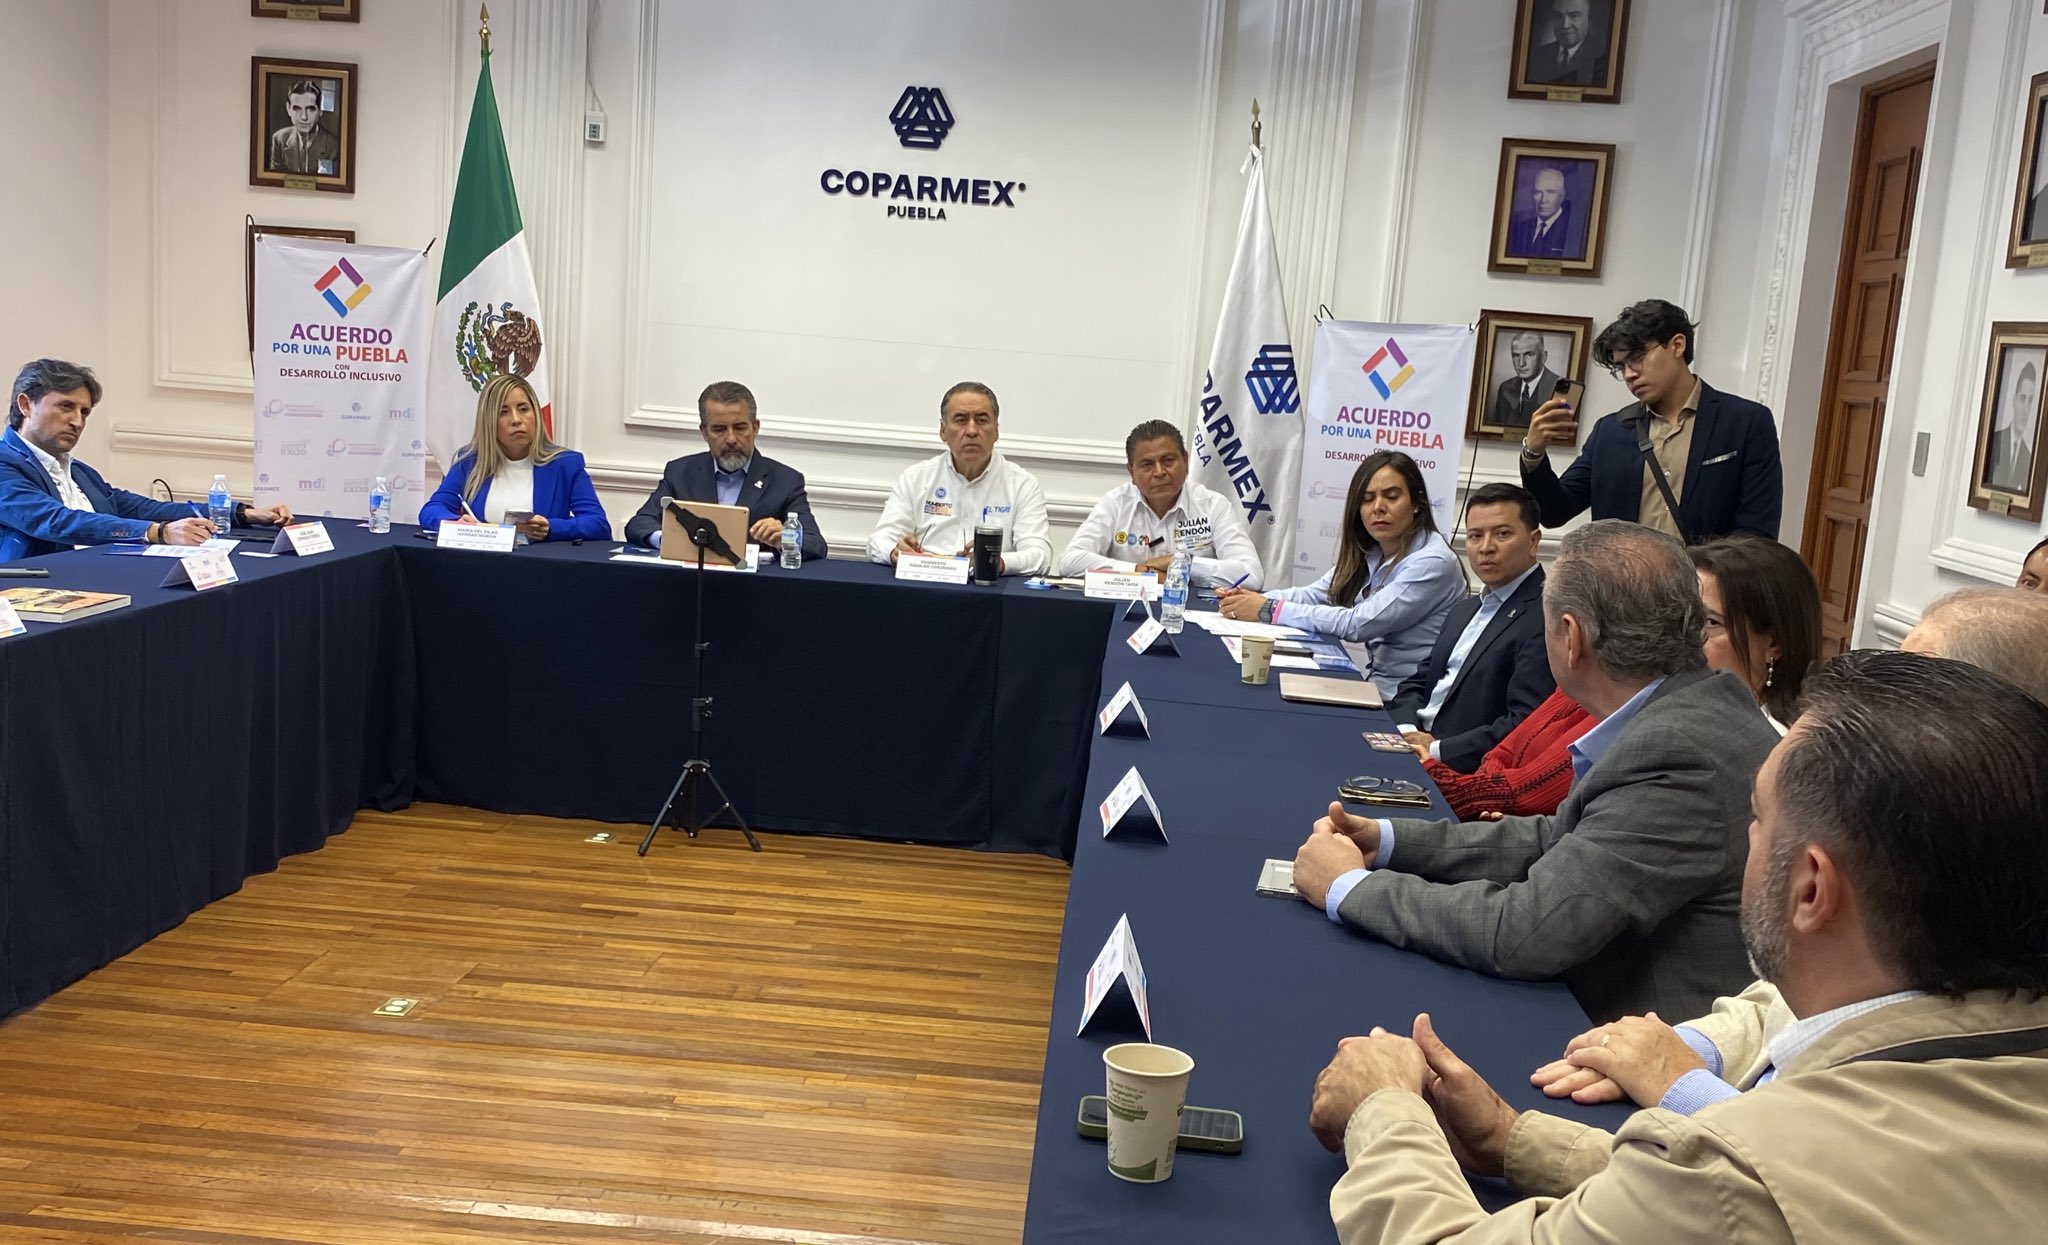 Responden 22 candidatos al Acuerdo por una Puebla con Desarrollo Inclusivo